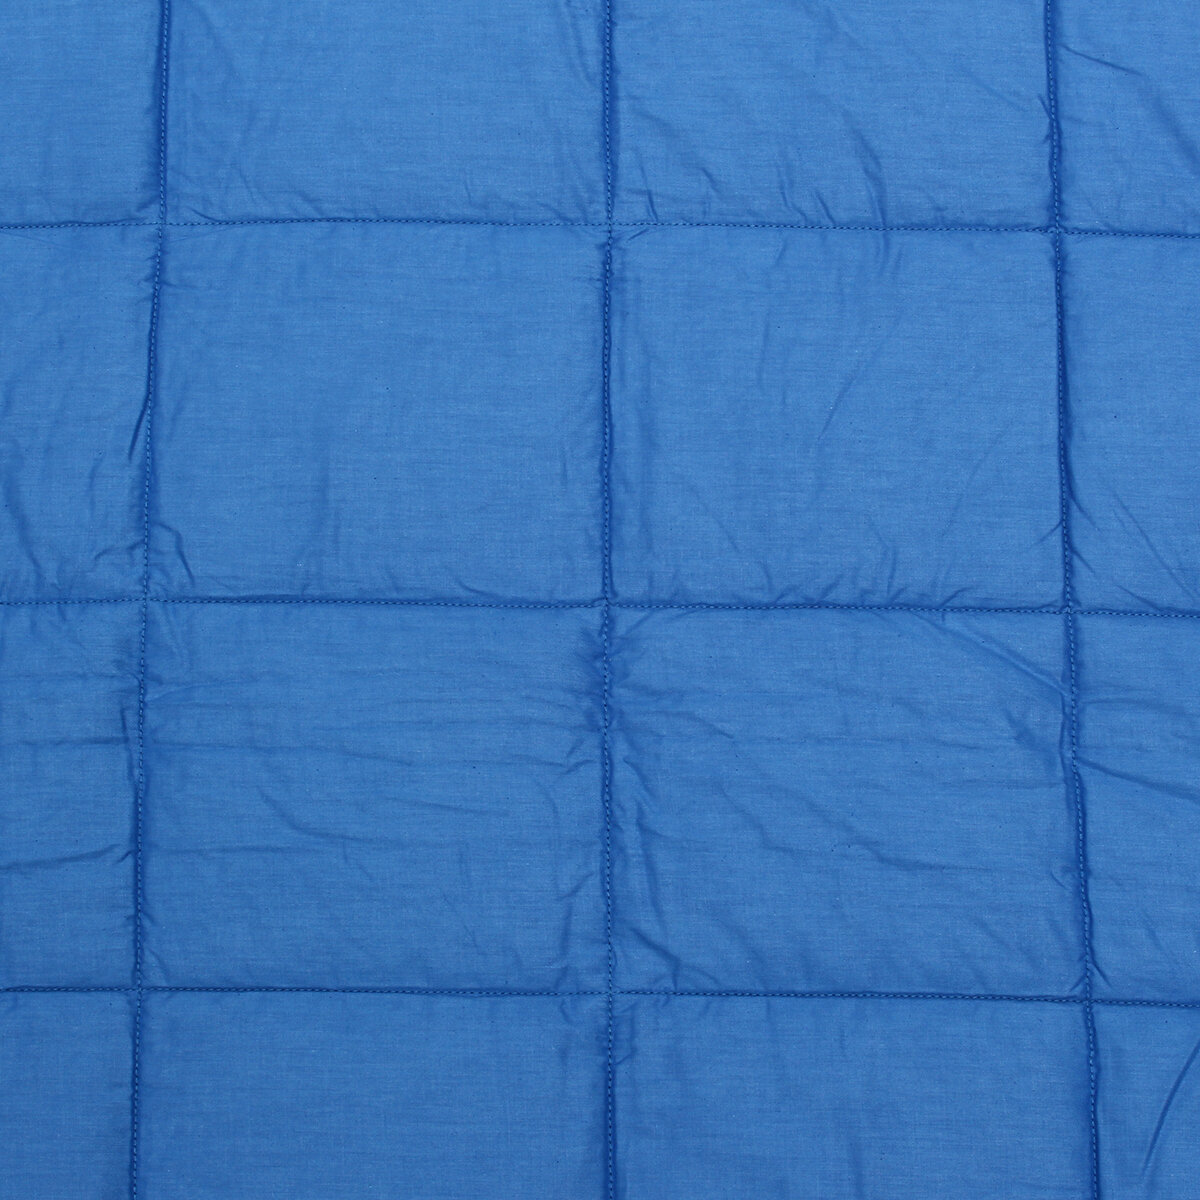 Cobertor ponderado de algodão sensorial pesado de 40x70 polegadas para alívio do estresse em viagens, acampamentos e em casa.